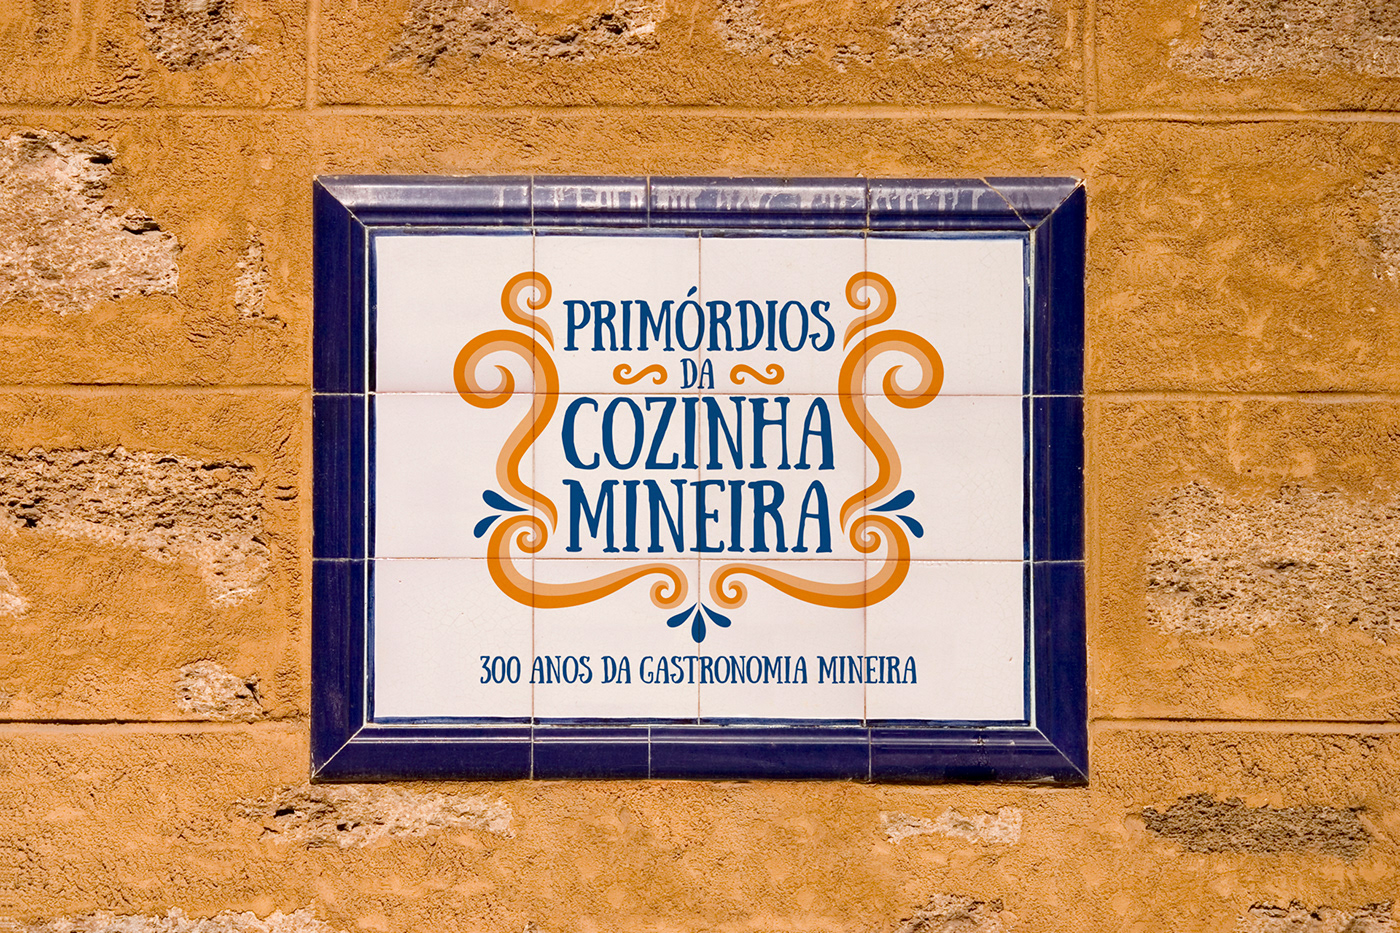 Culinária Mineira cultura Festival de Gastronomia gastronomia identidade visual logo minas gerais senac tiradentes tradição